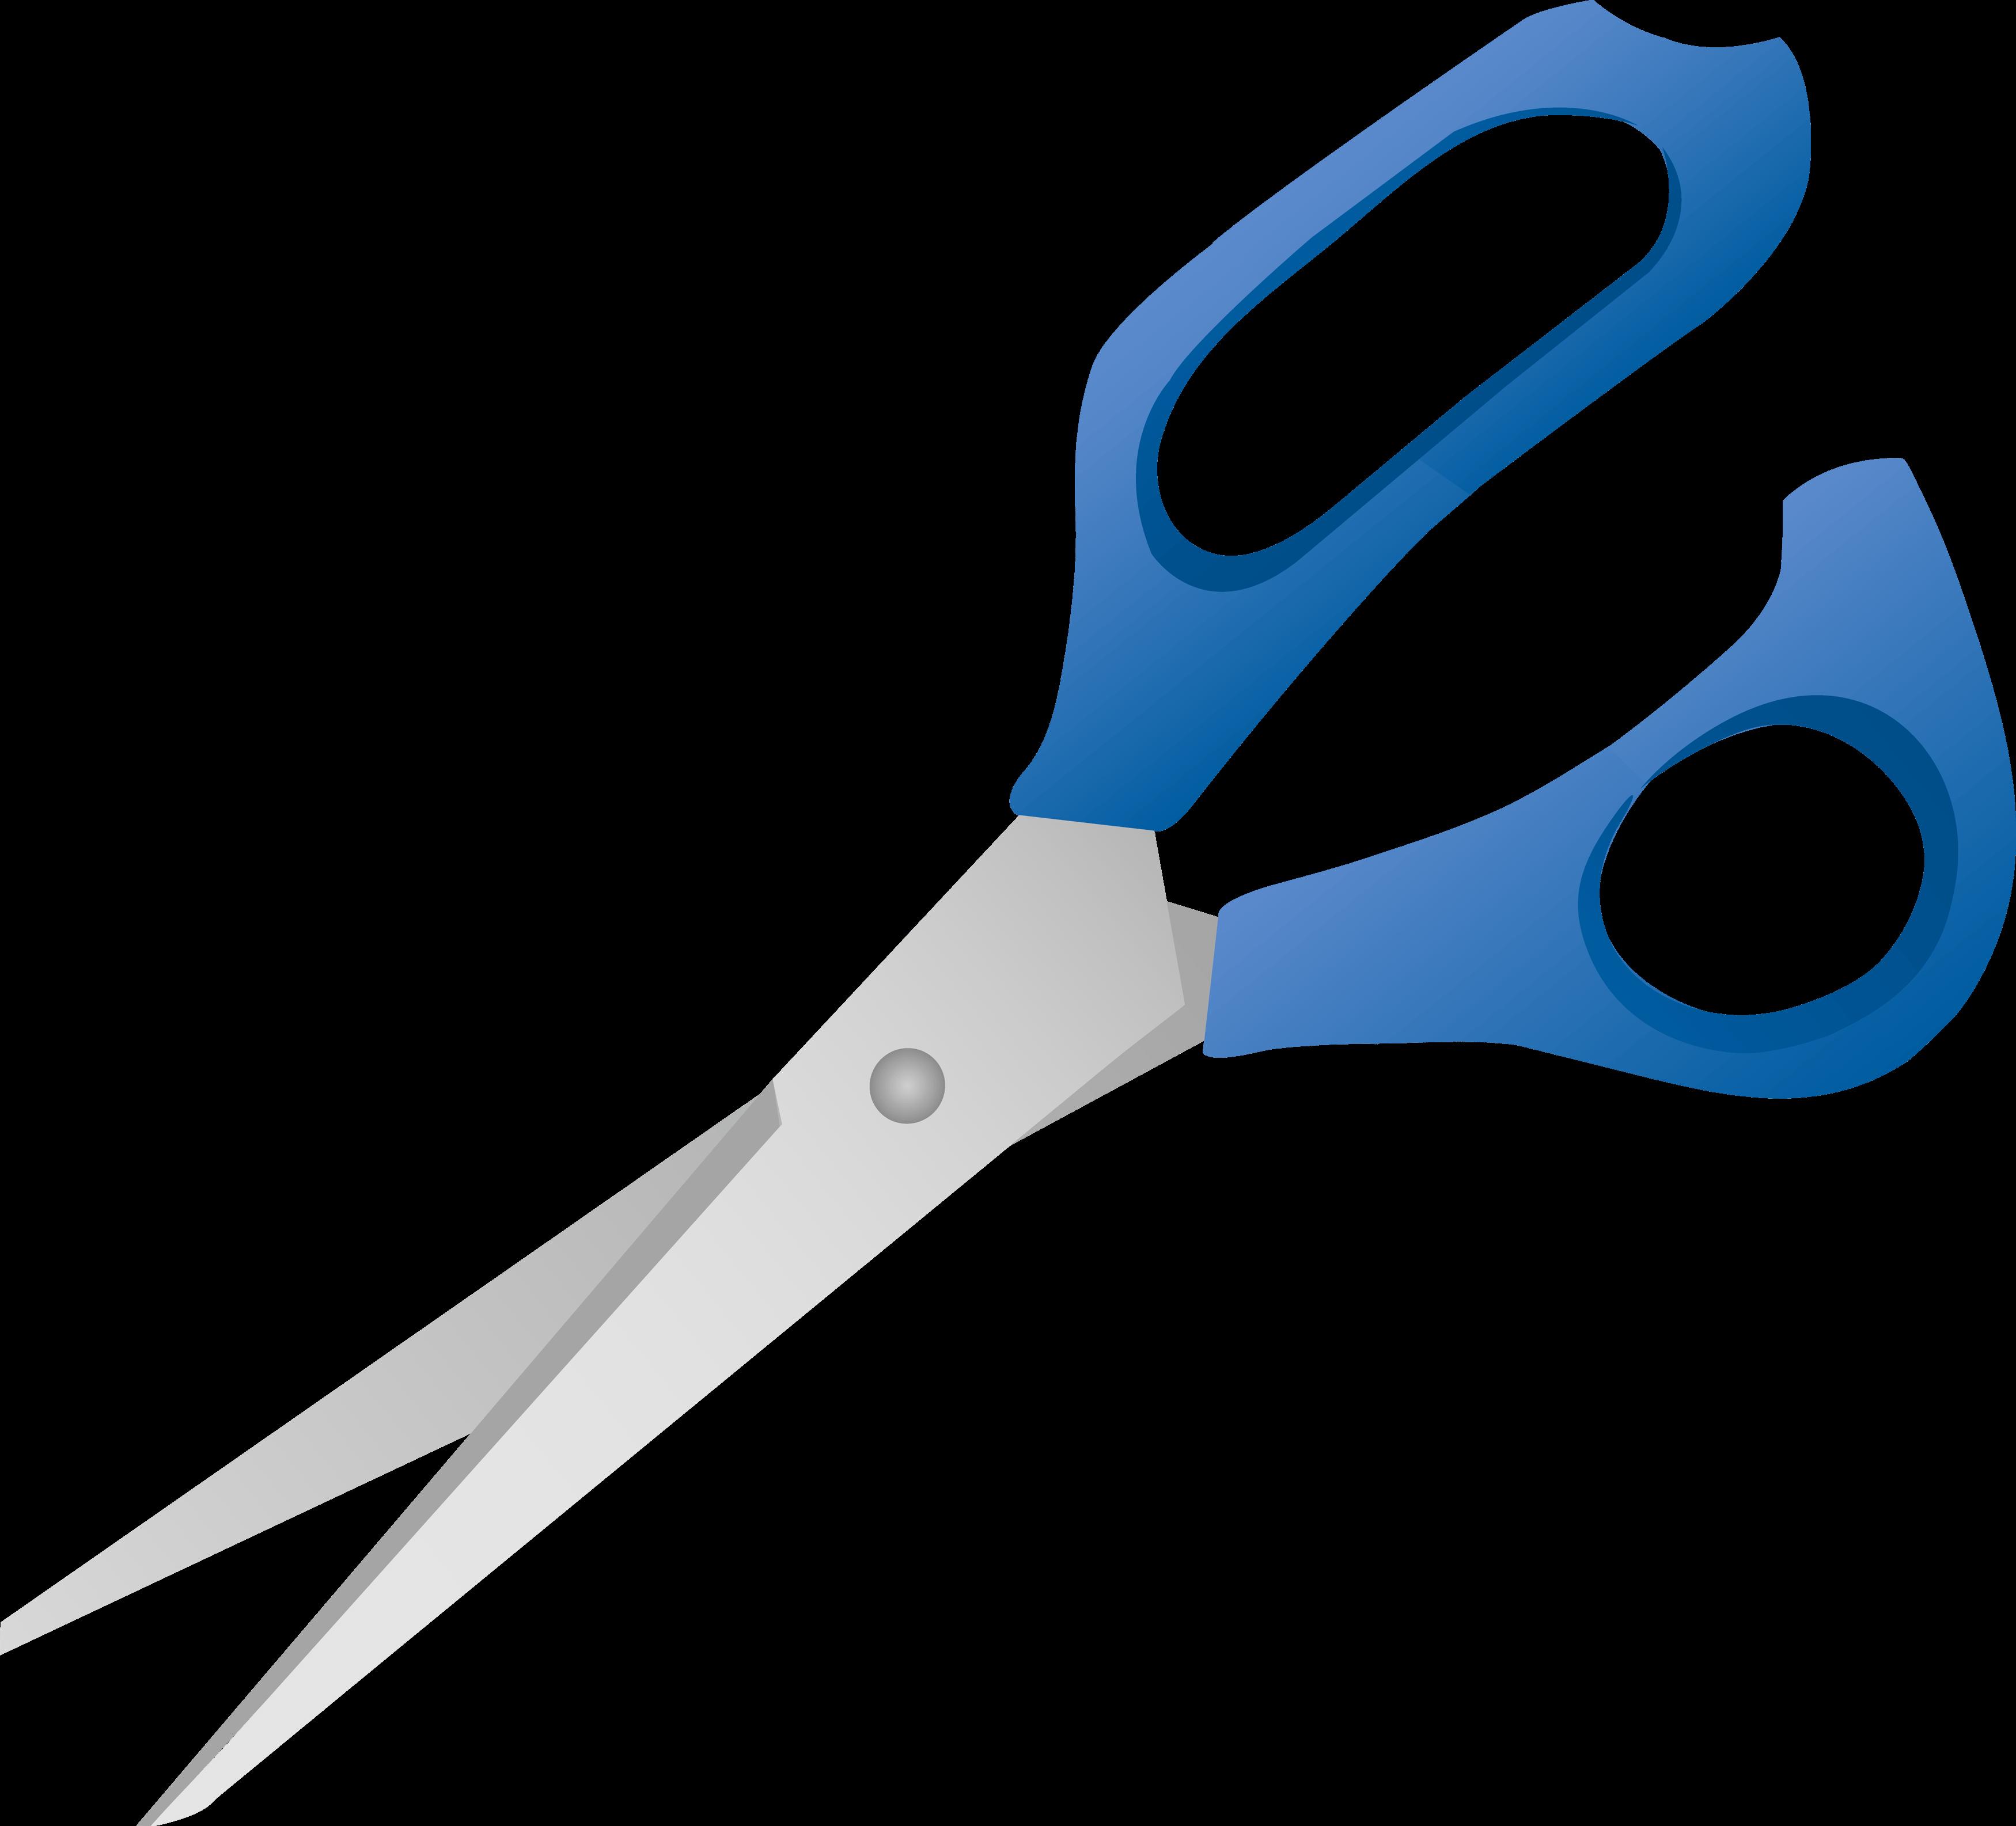 https://freepngimg.com/convert-png/1859-blue-scissors-png-image-download